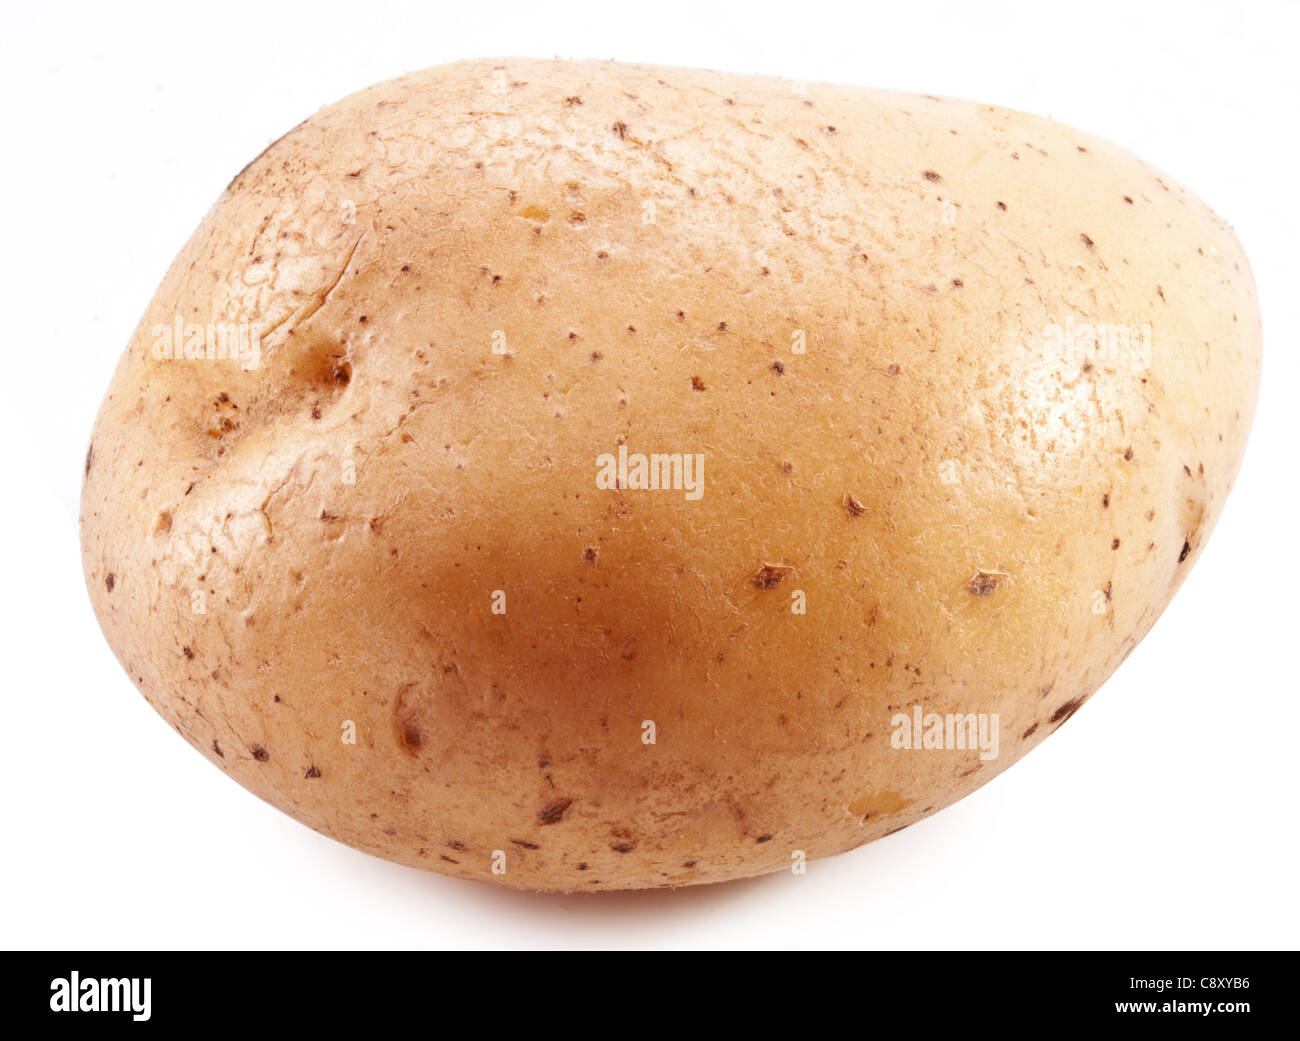 Potato on a white background. Stock Photo